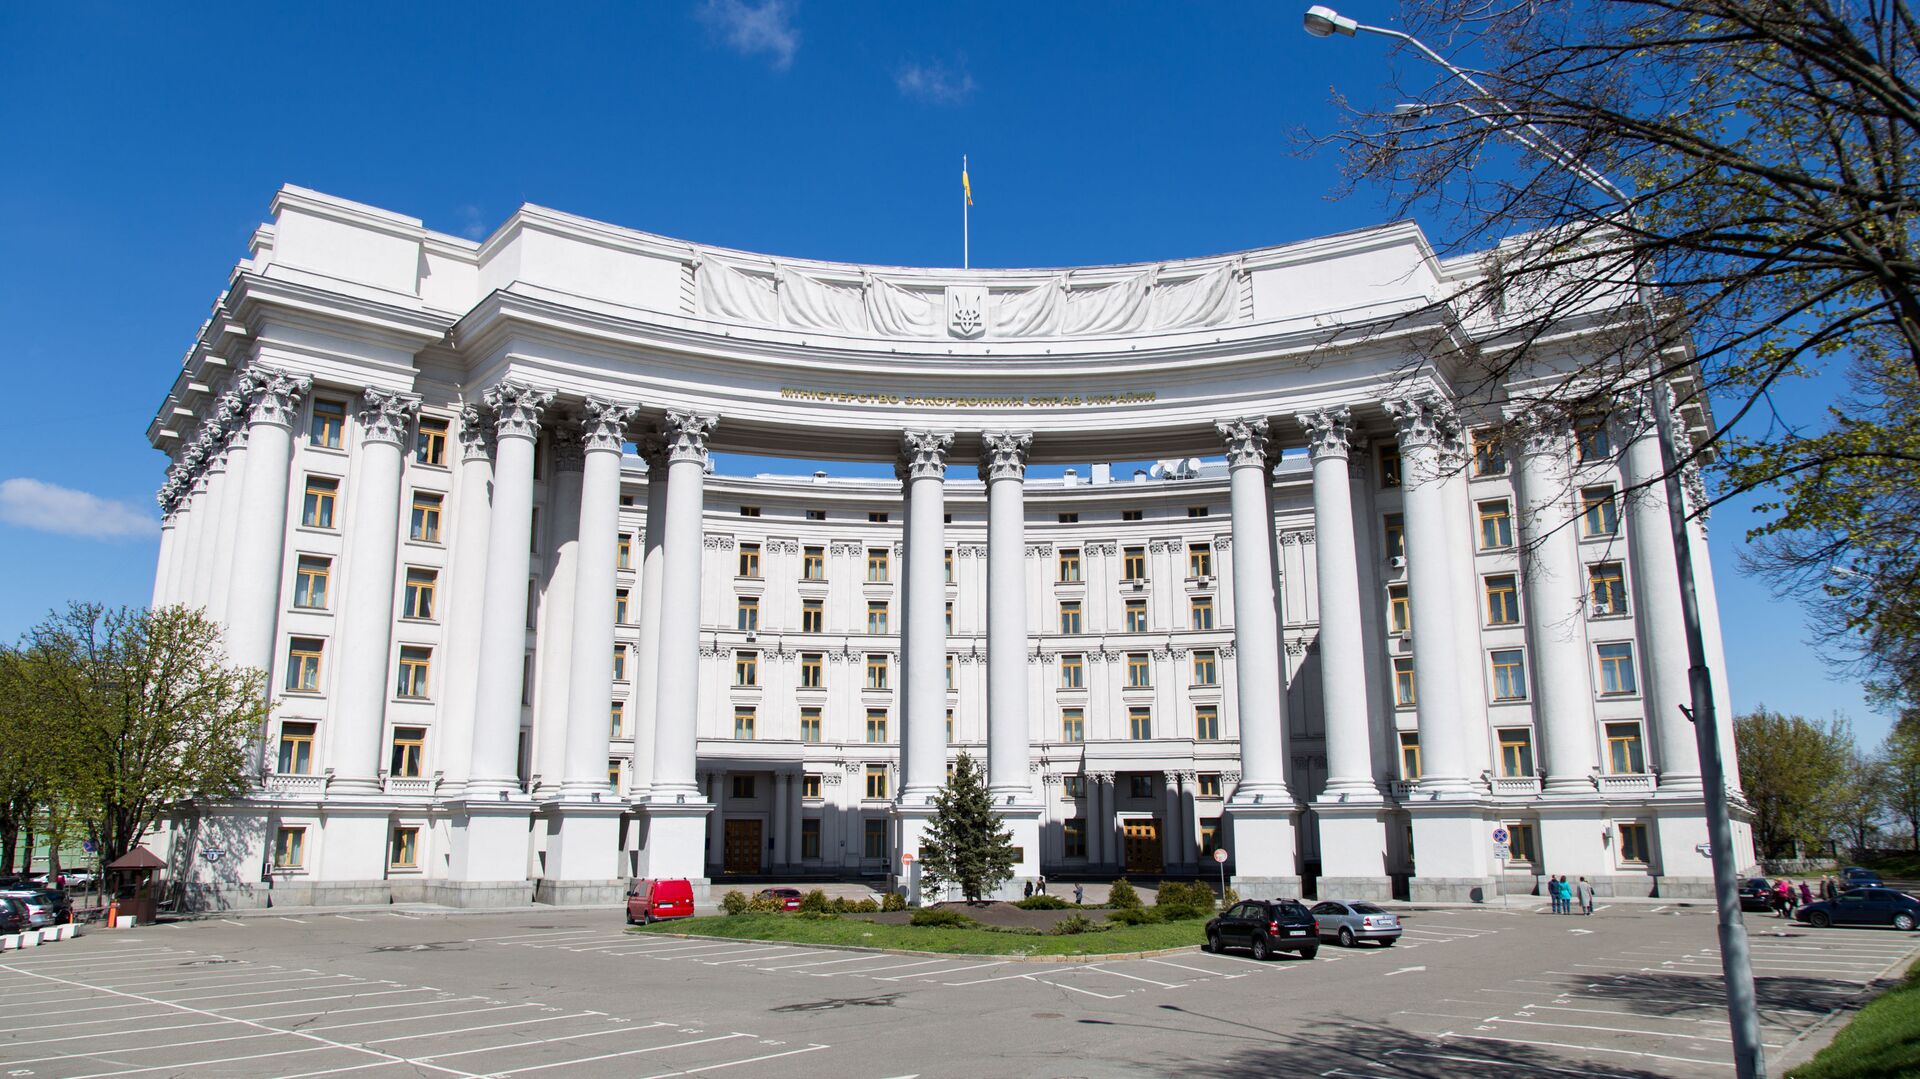 Здание Министерства иностранных дел Украины в Киеве - Sputnik Латвия, 1920, 25.07.2021